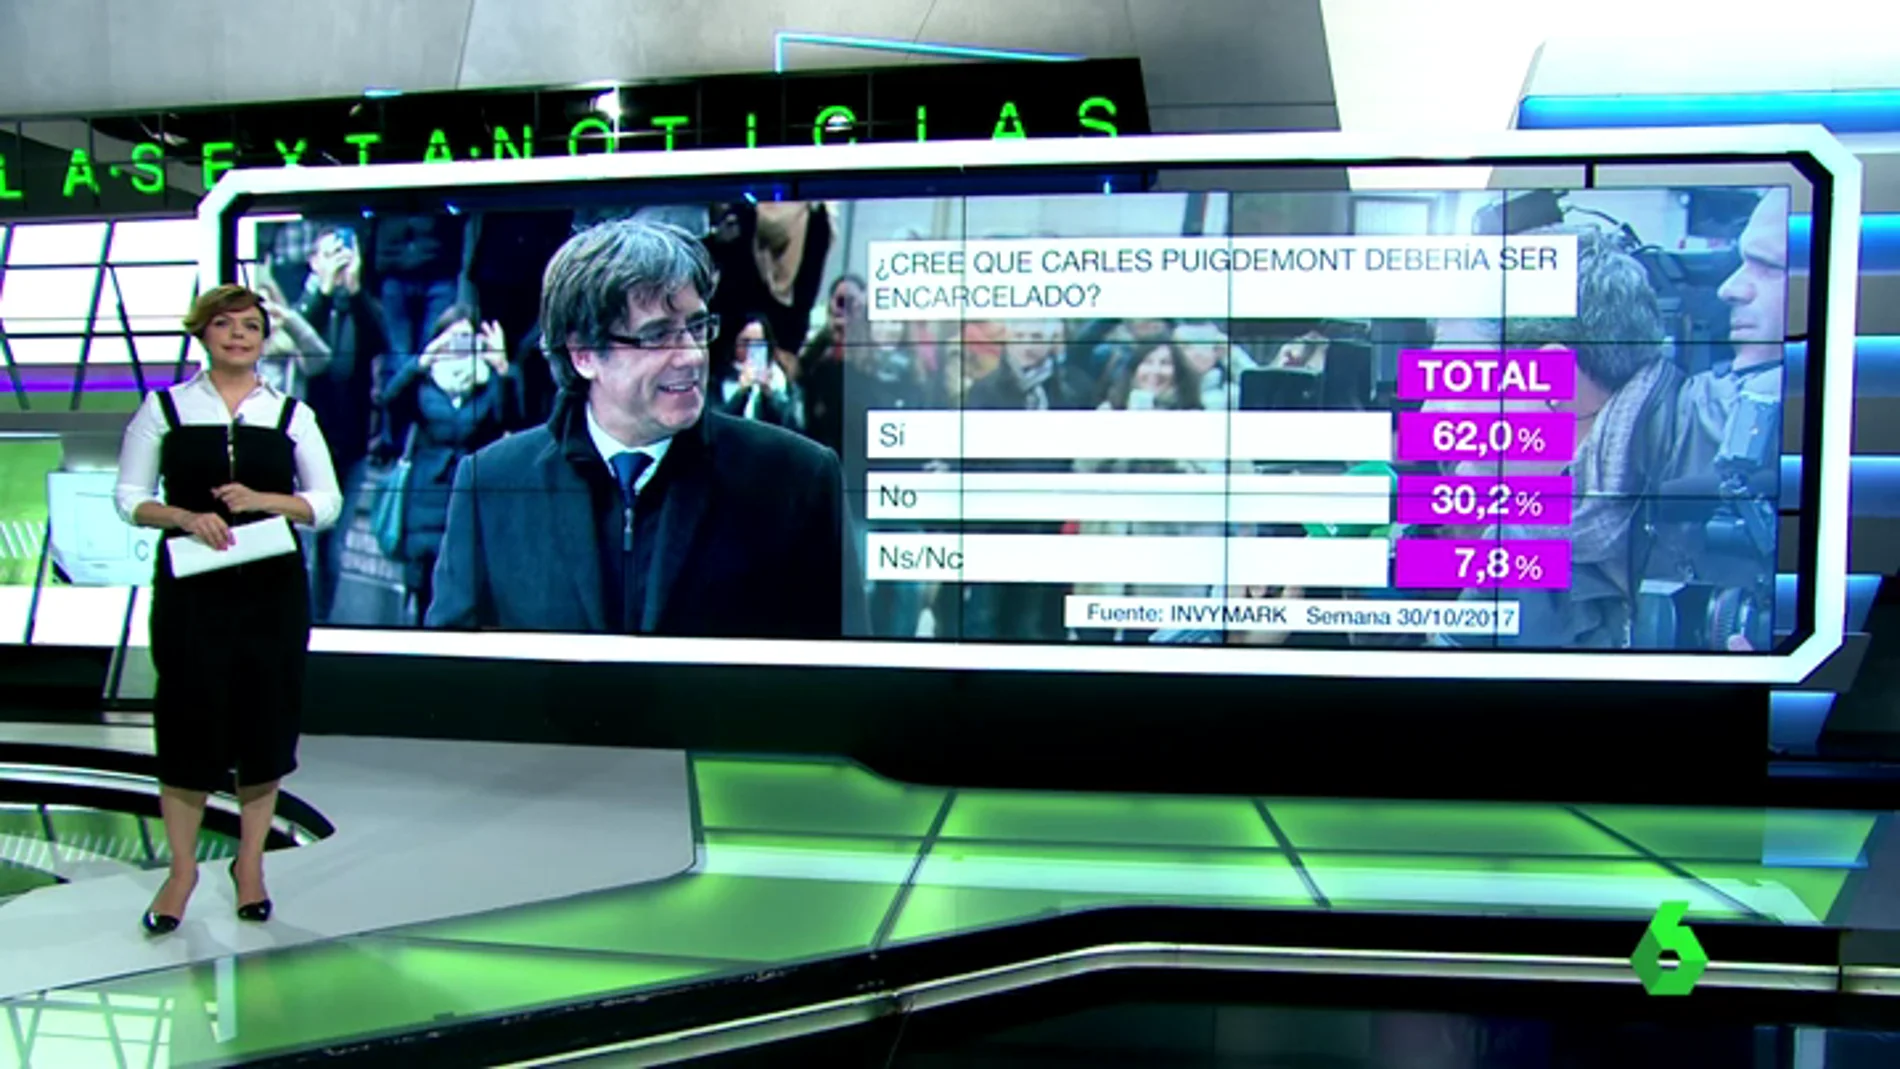 Barómetro sobre si Carles Puigdemont debería ser encarcelado